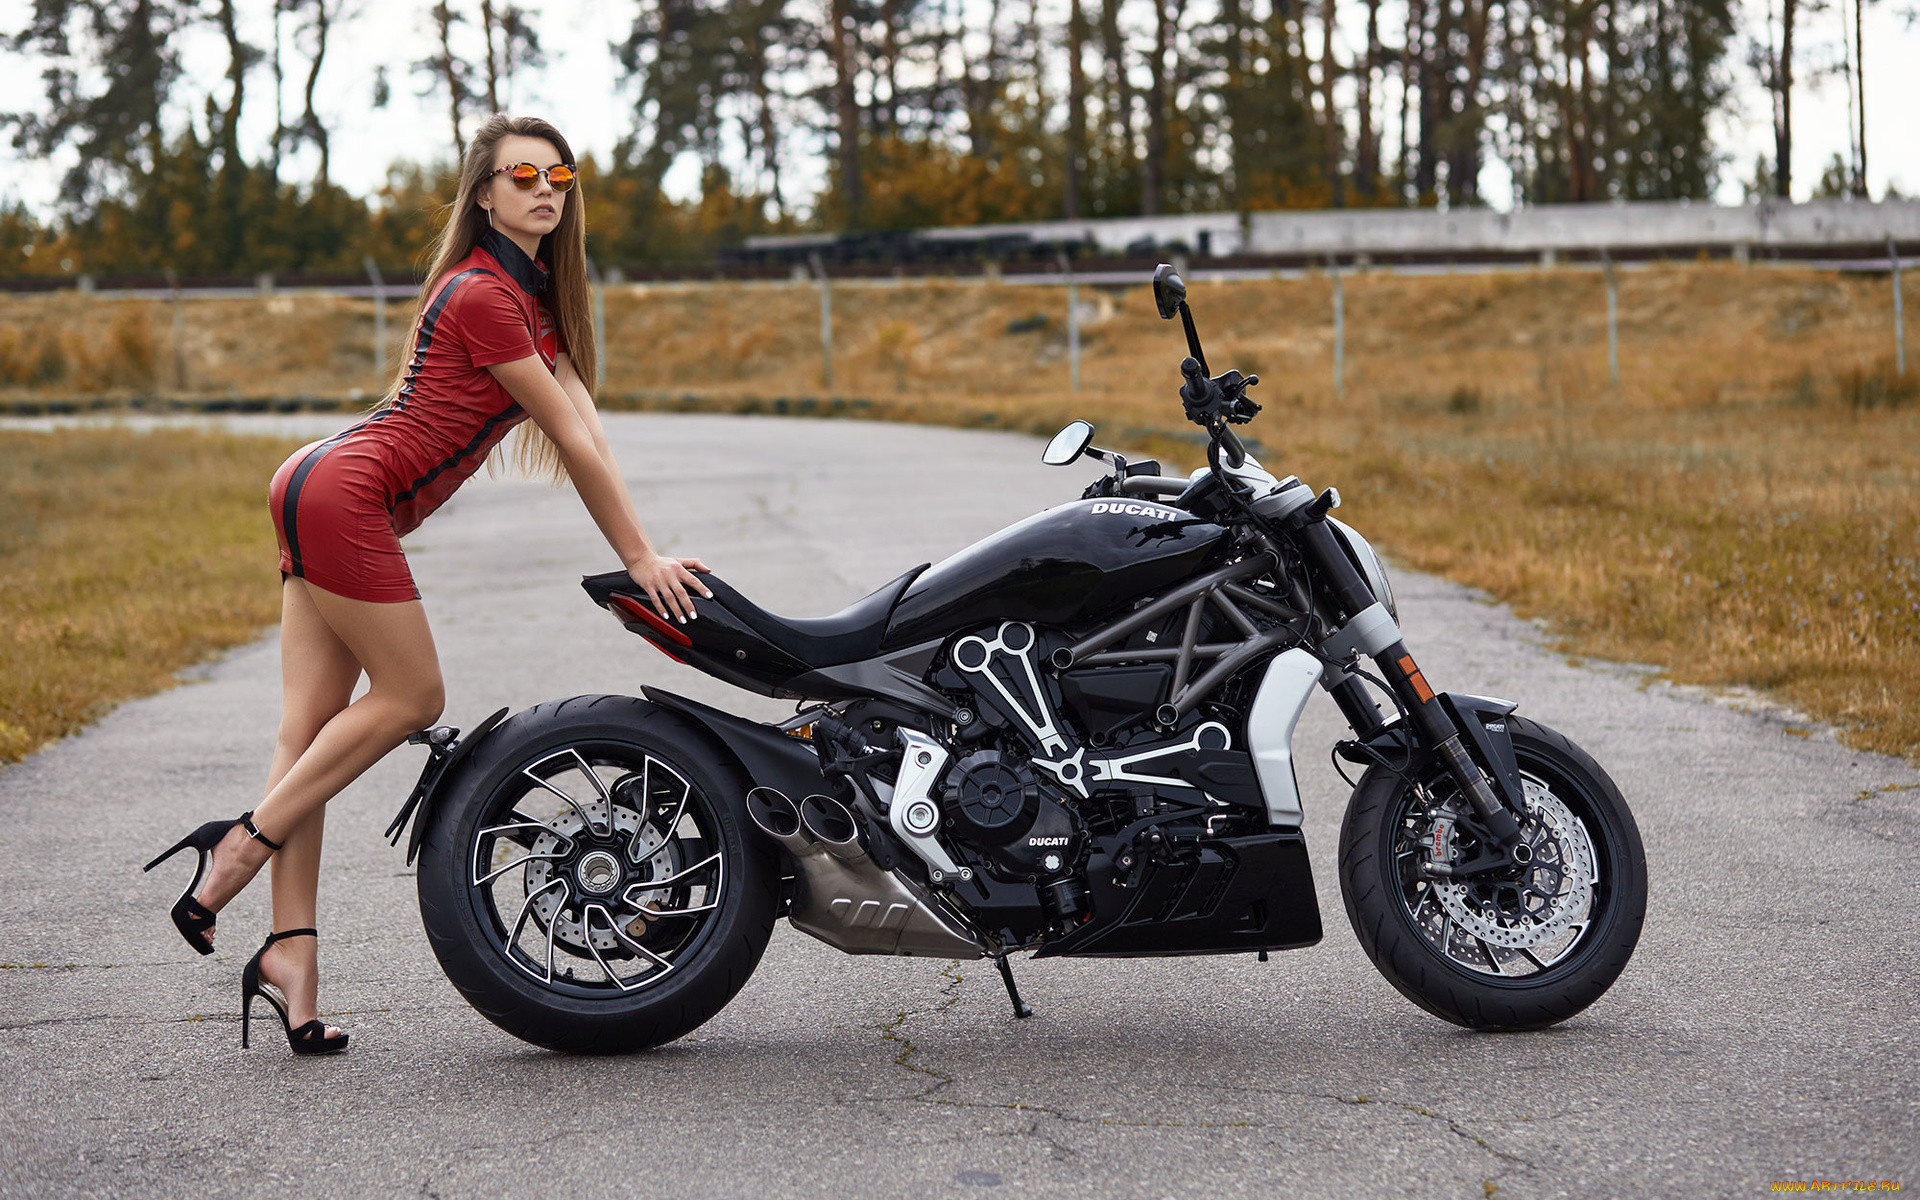 фото красивых девушек на известных марках мотоциклов